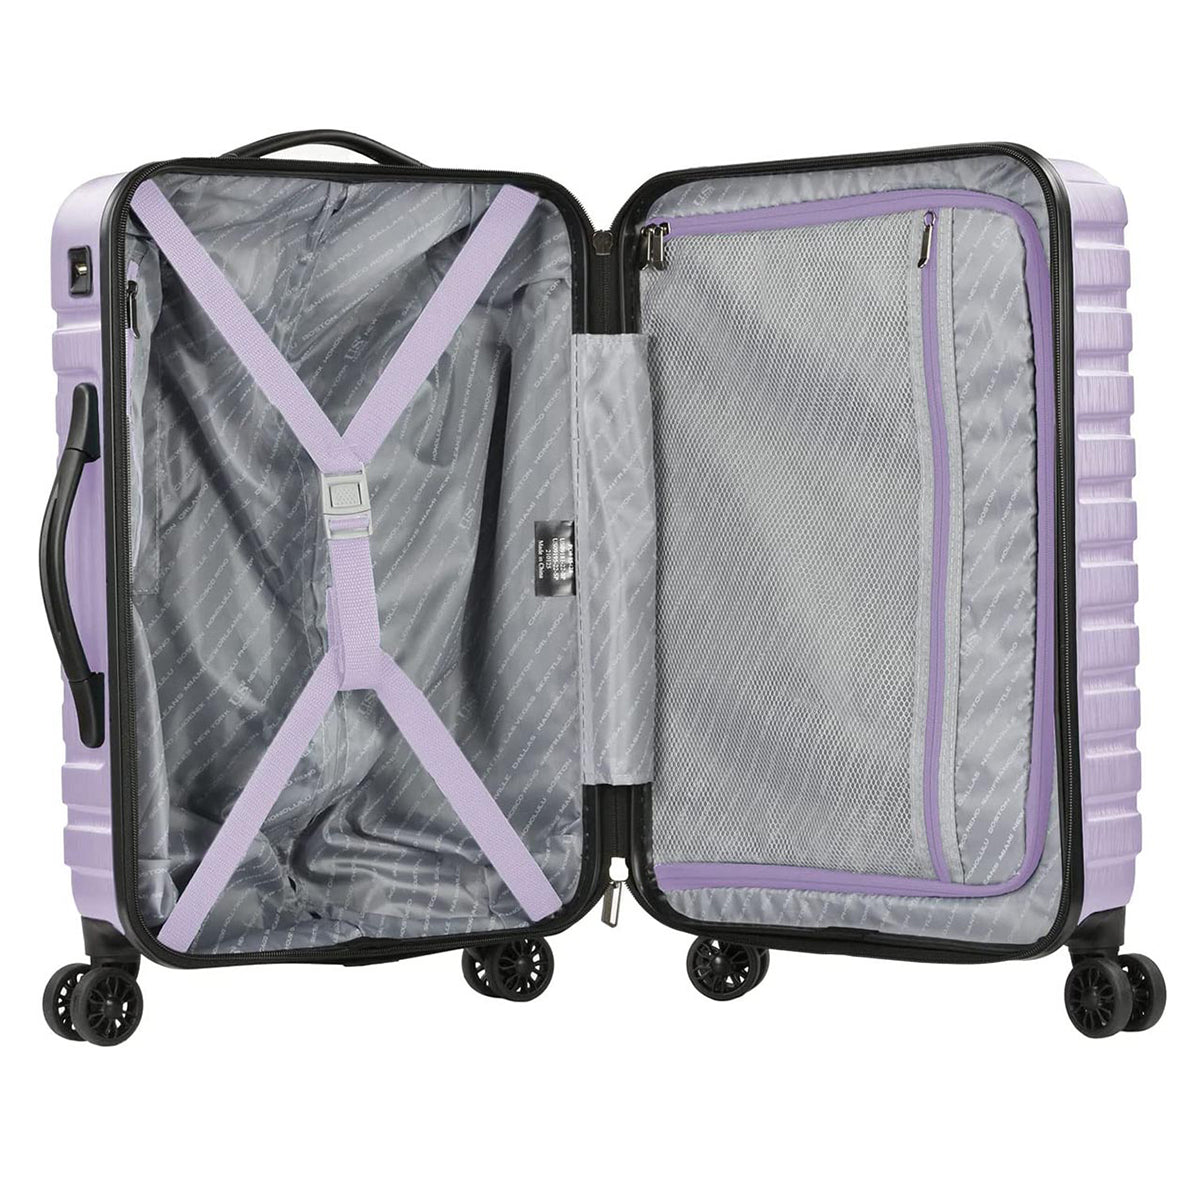 U.S. Traveler Boren Hardside Spinner Luggage With Aluminum Handle, 2-Piece Set